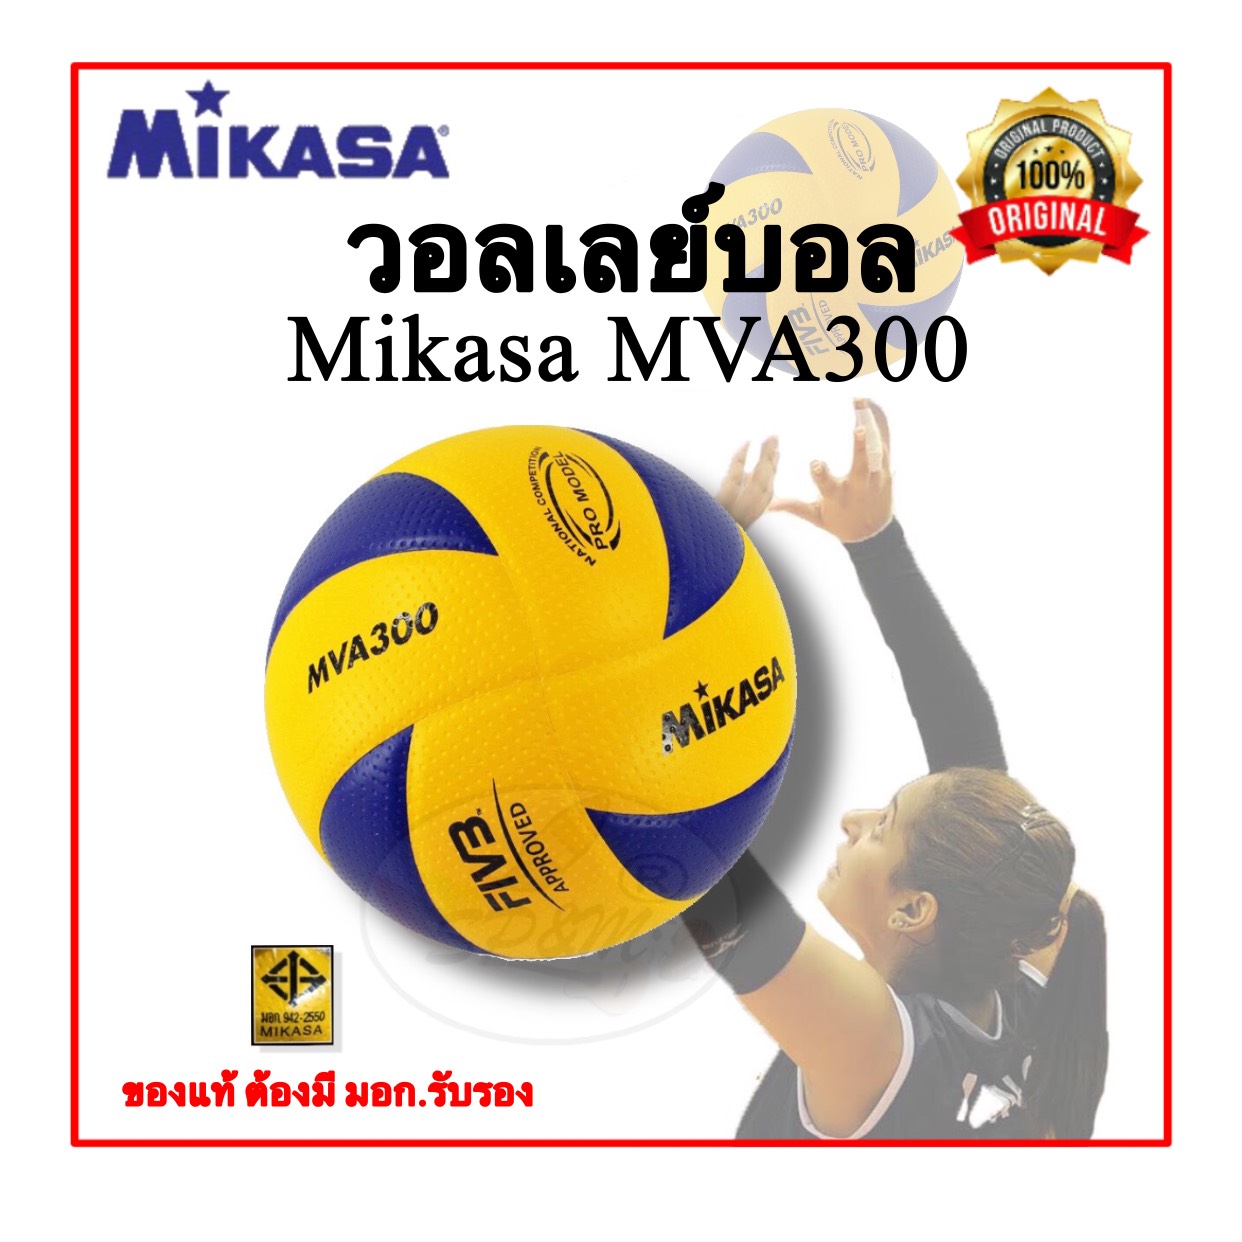 Mva300 วอลเล่บอล Mikasa MVA300 (Original แท้ 100% มอก. รับรอง)